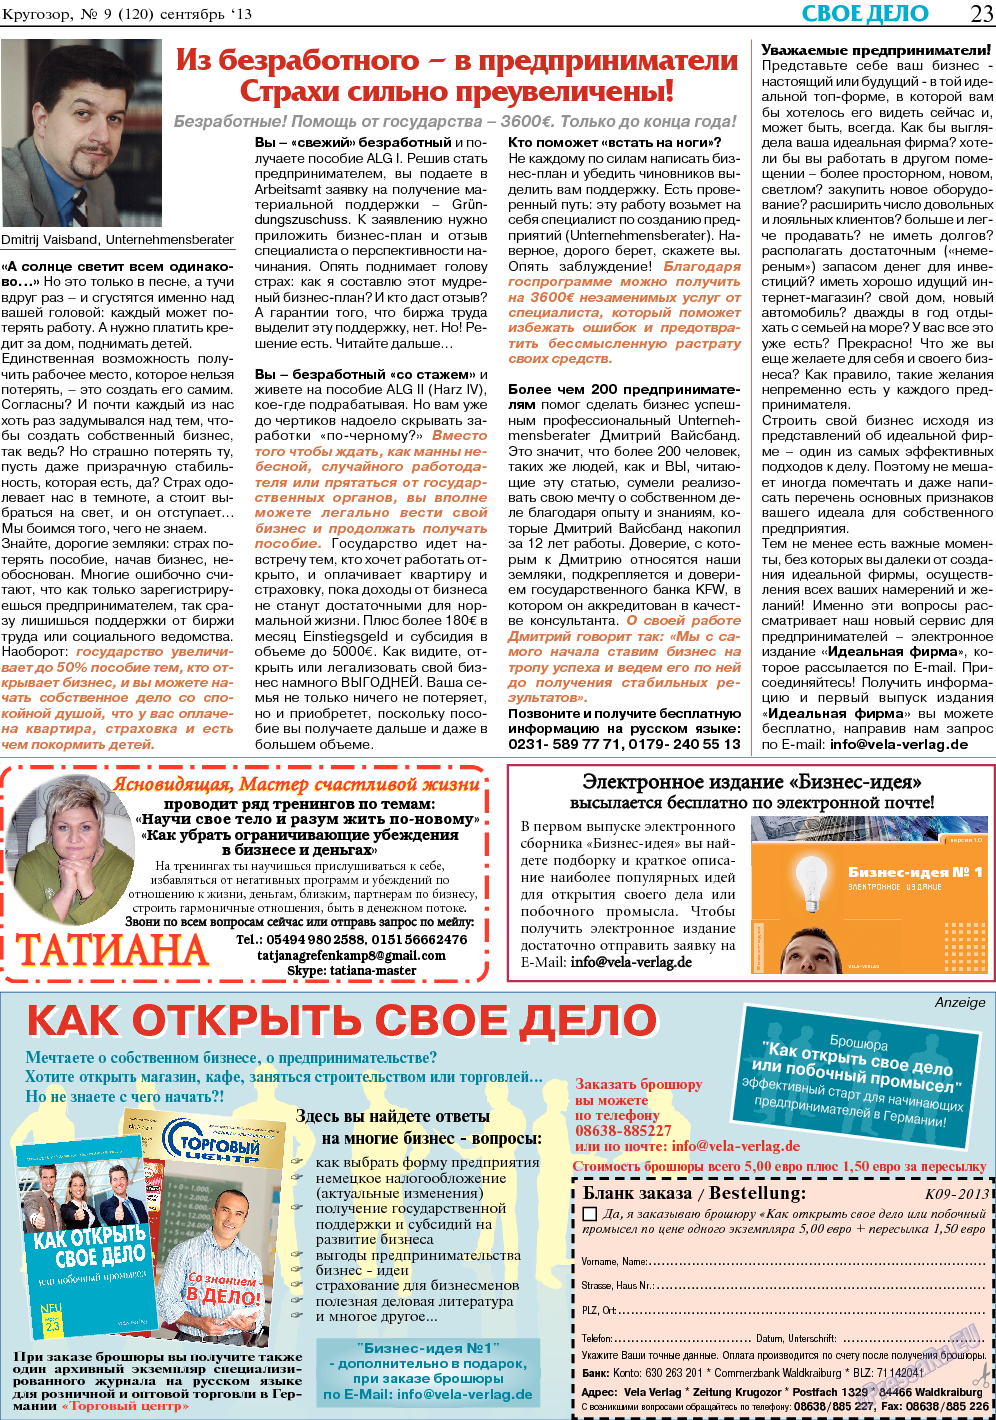 Кругозор, газета. 2013 №9 стр.23